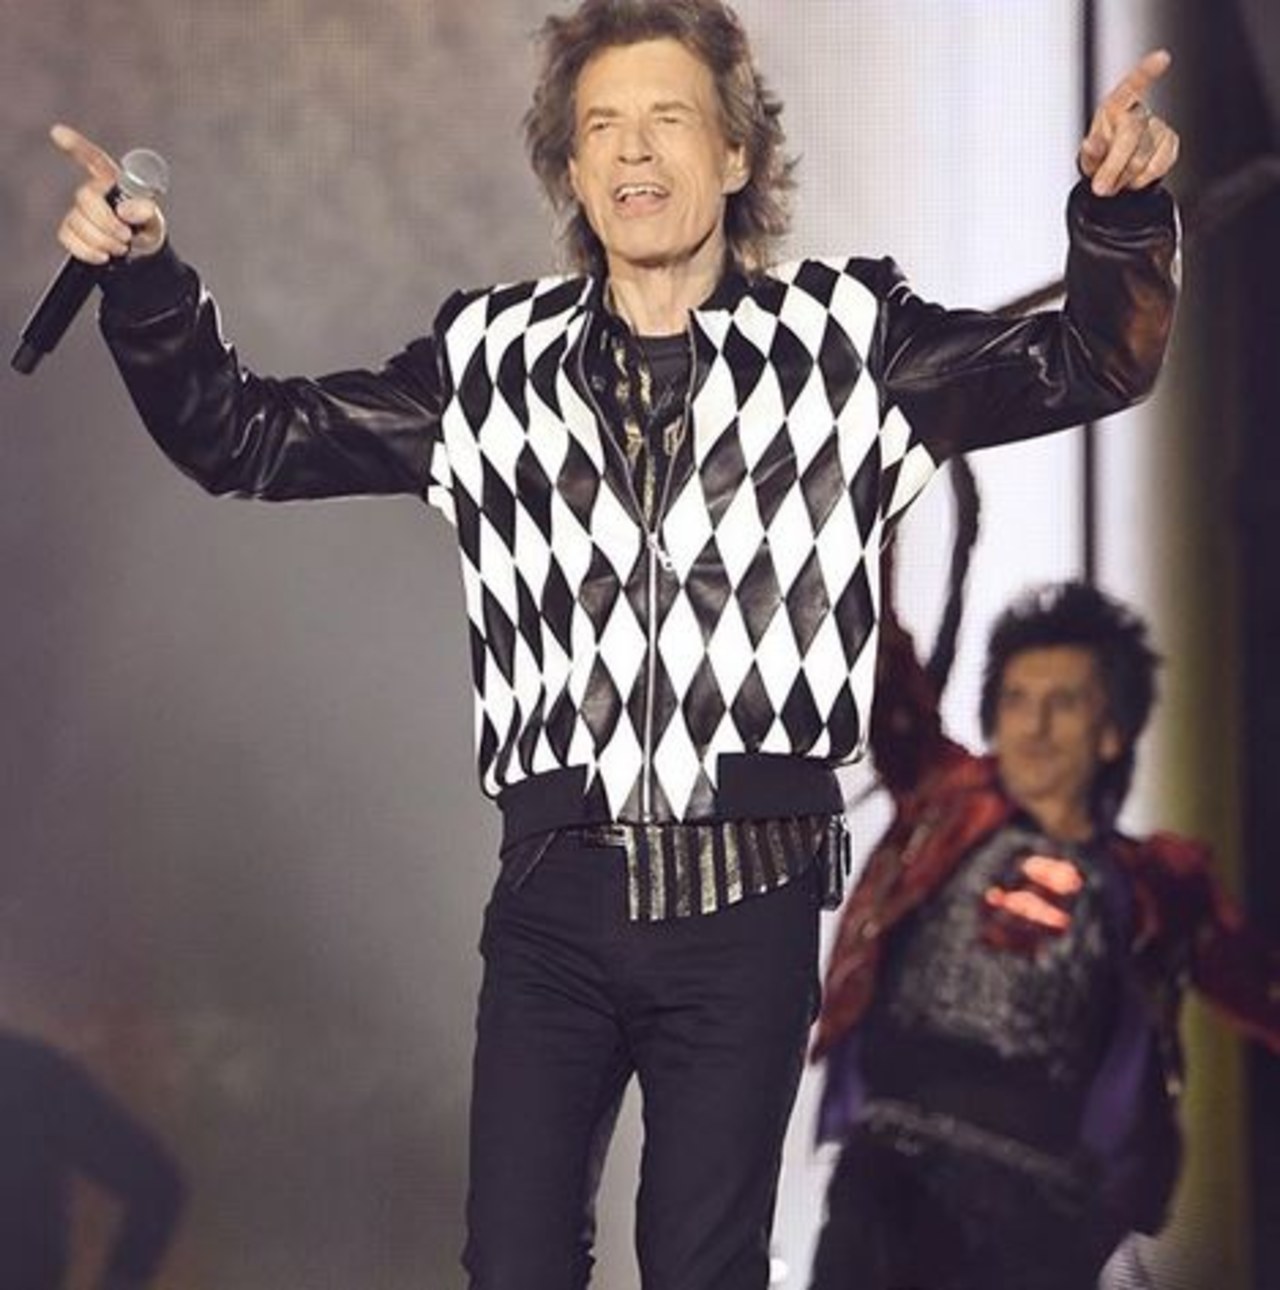 Powrót króla! Mick Jagger na koncercie w Chicago! 